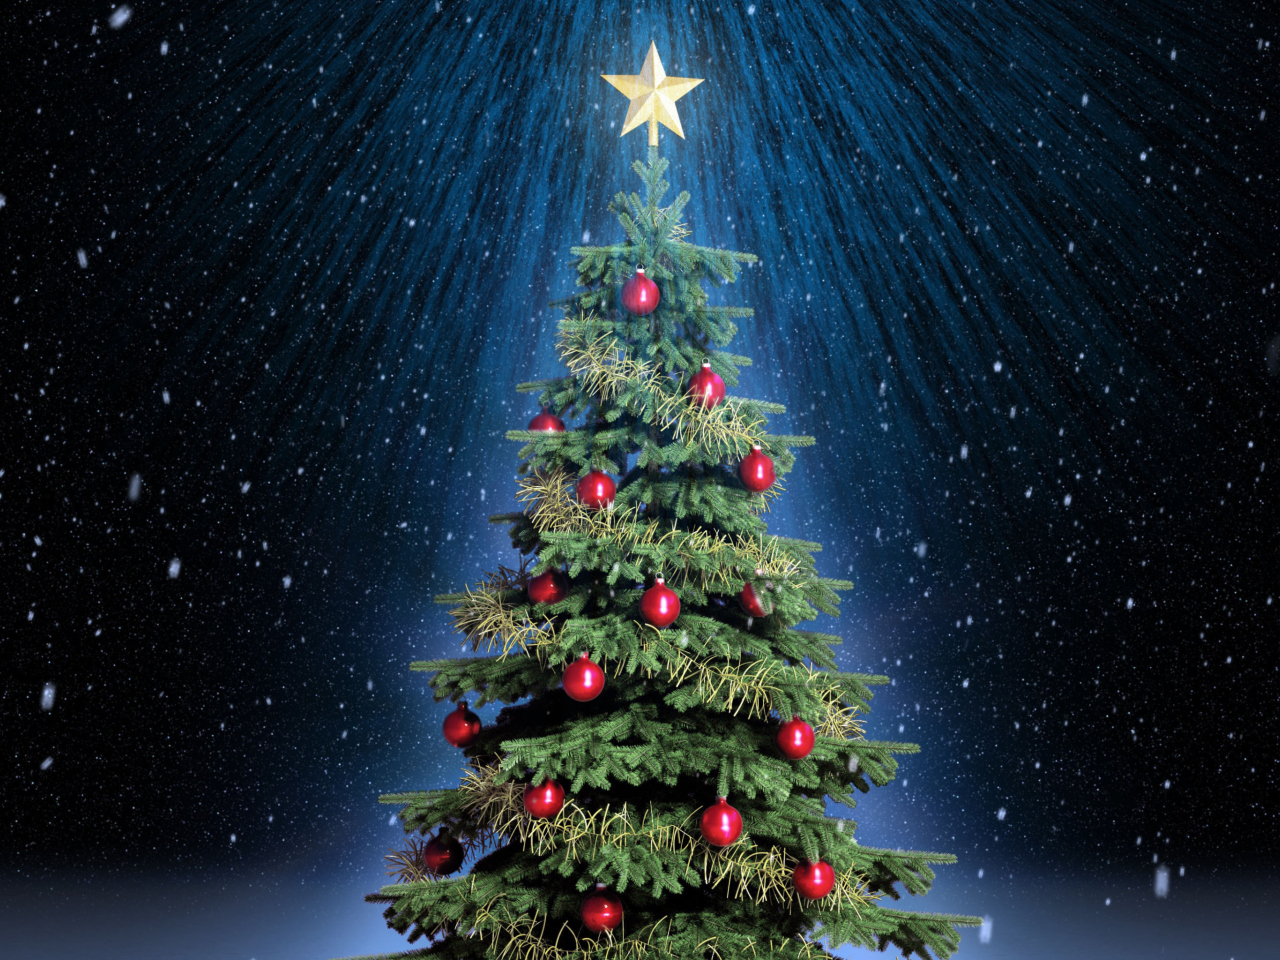 Обои Classic Christmas Tree With Star On Top 1280x960